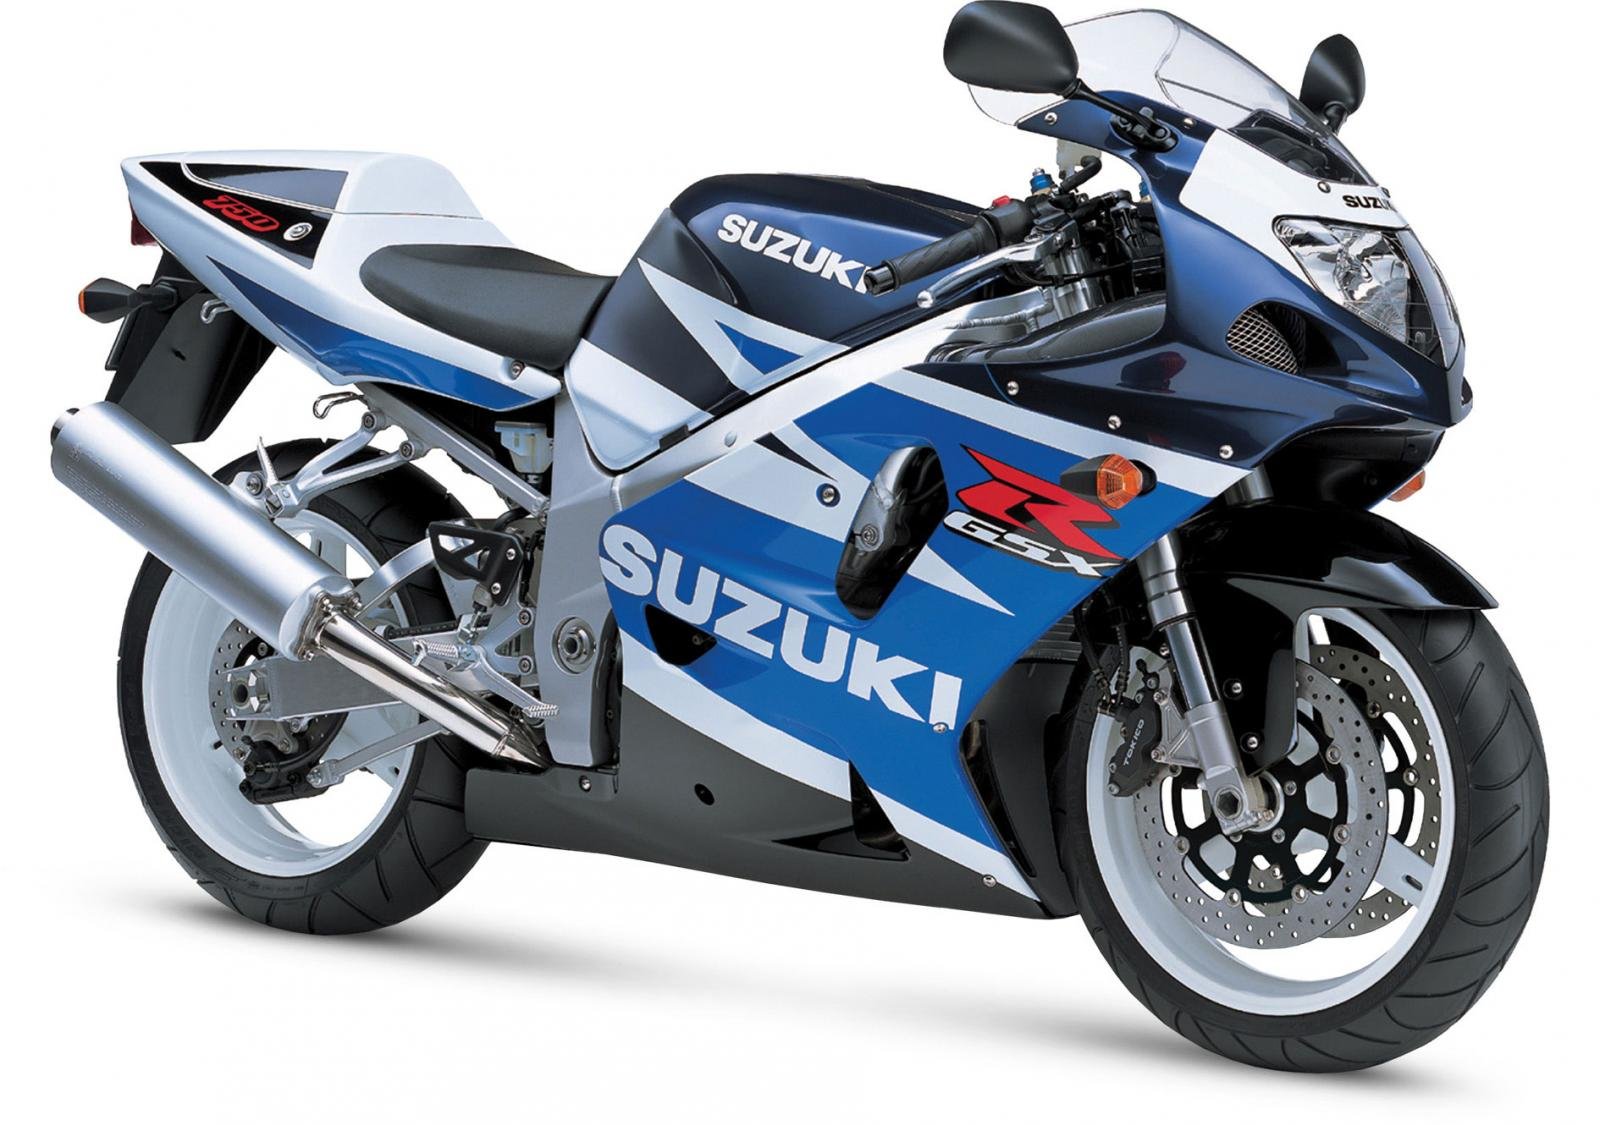 2003, Suzuki, Gsx r750, Motorcycles Wallpaper